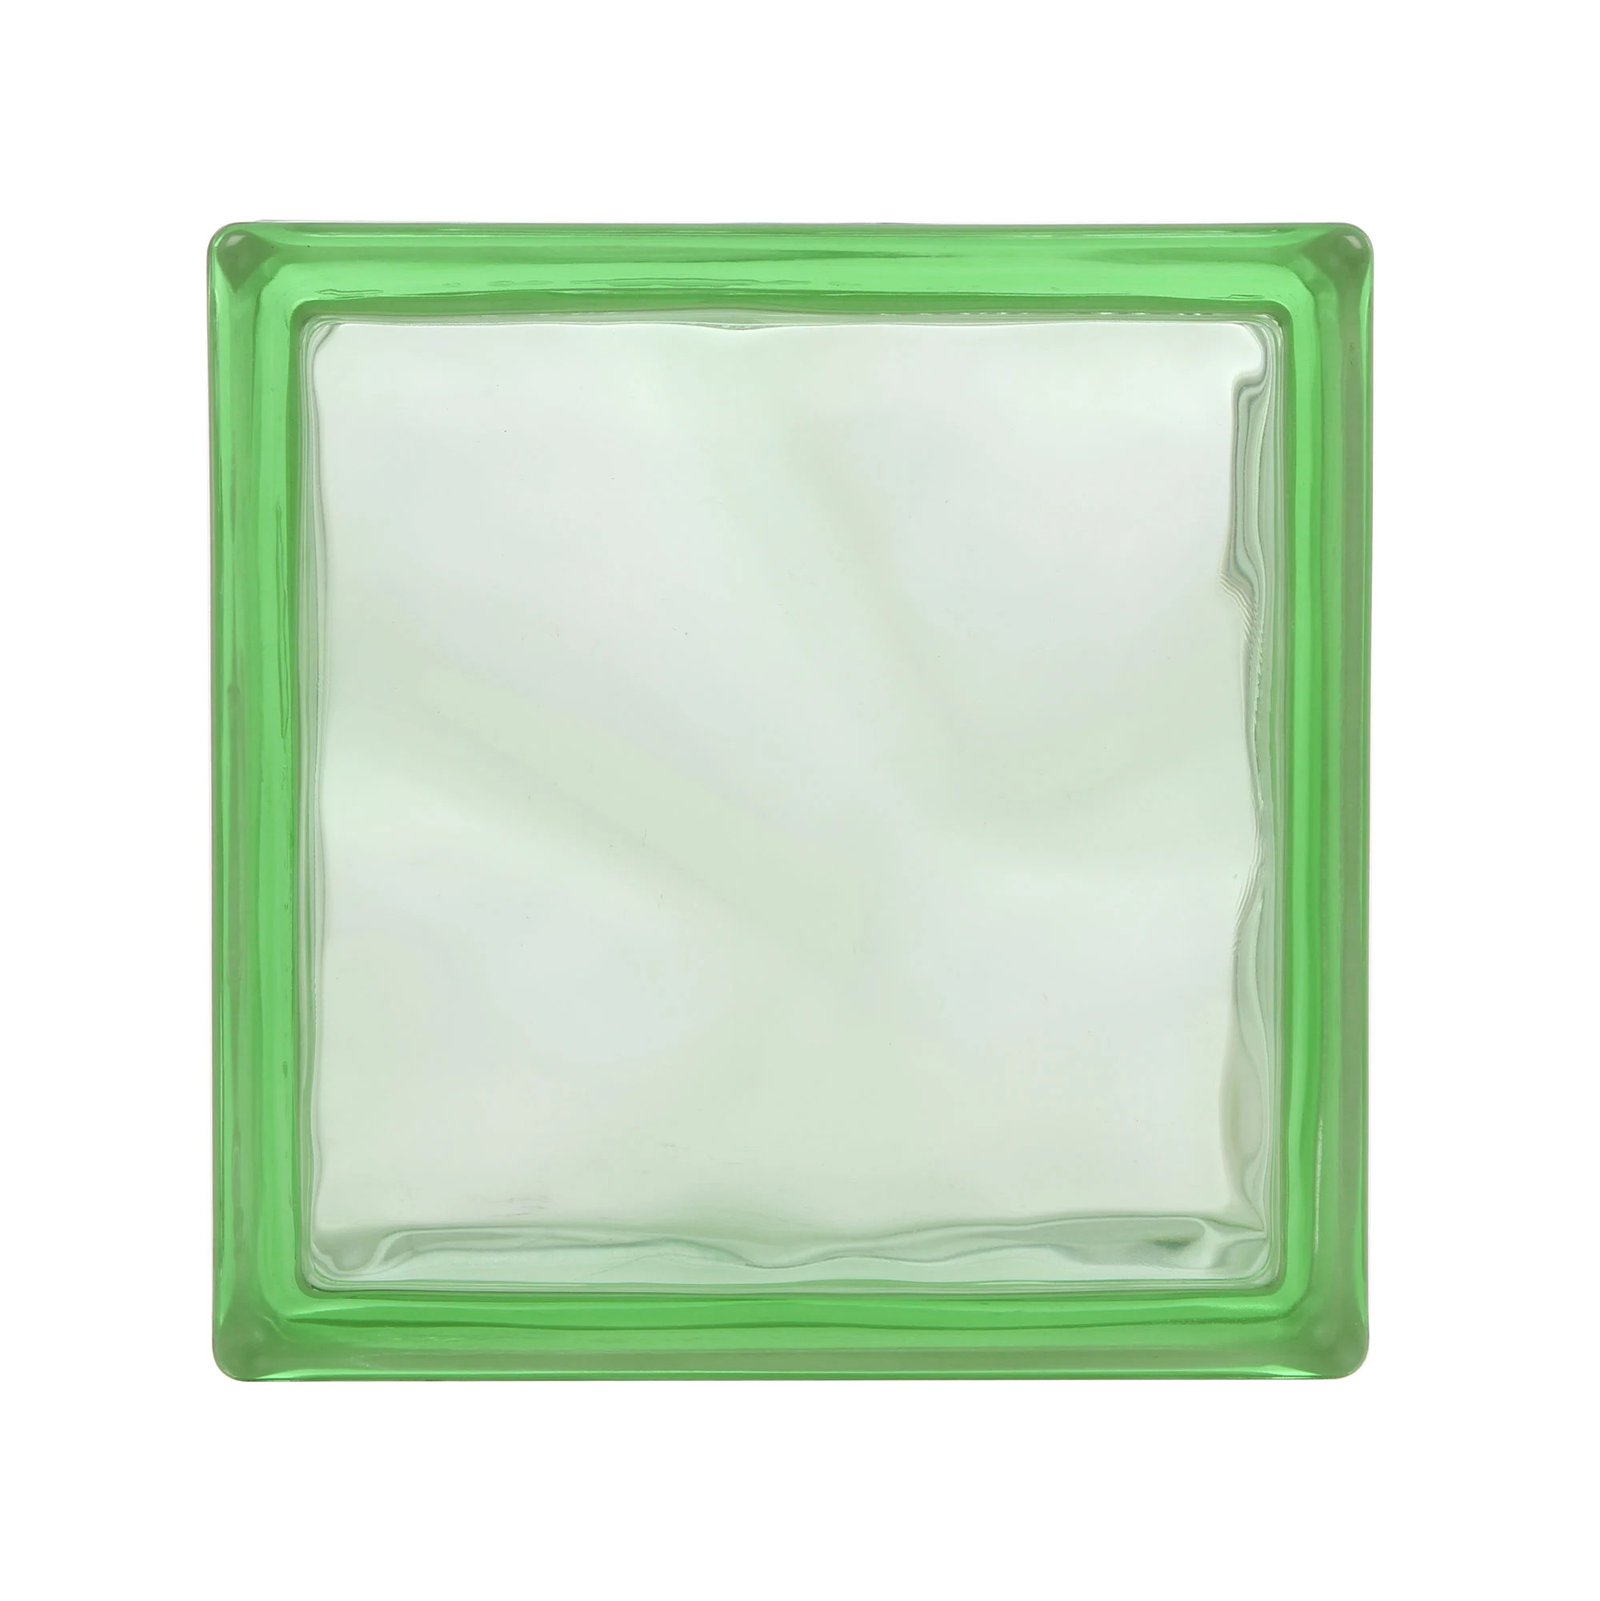 Grøn glasbyggesten, indvendig/udvendig, 19 x 19 x 8 cm